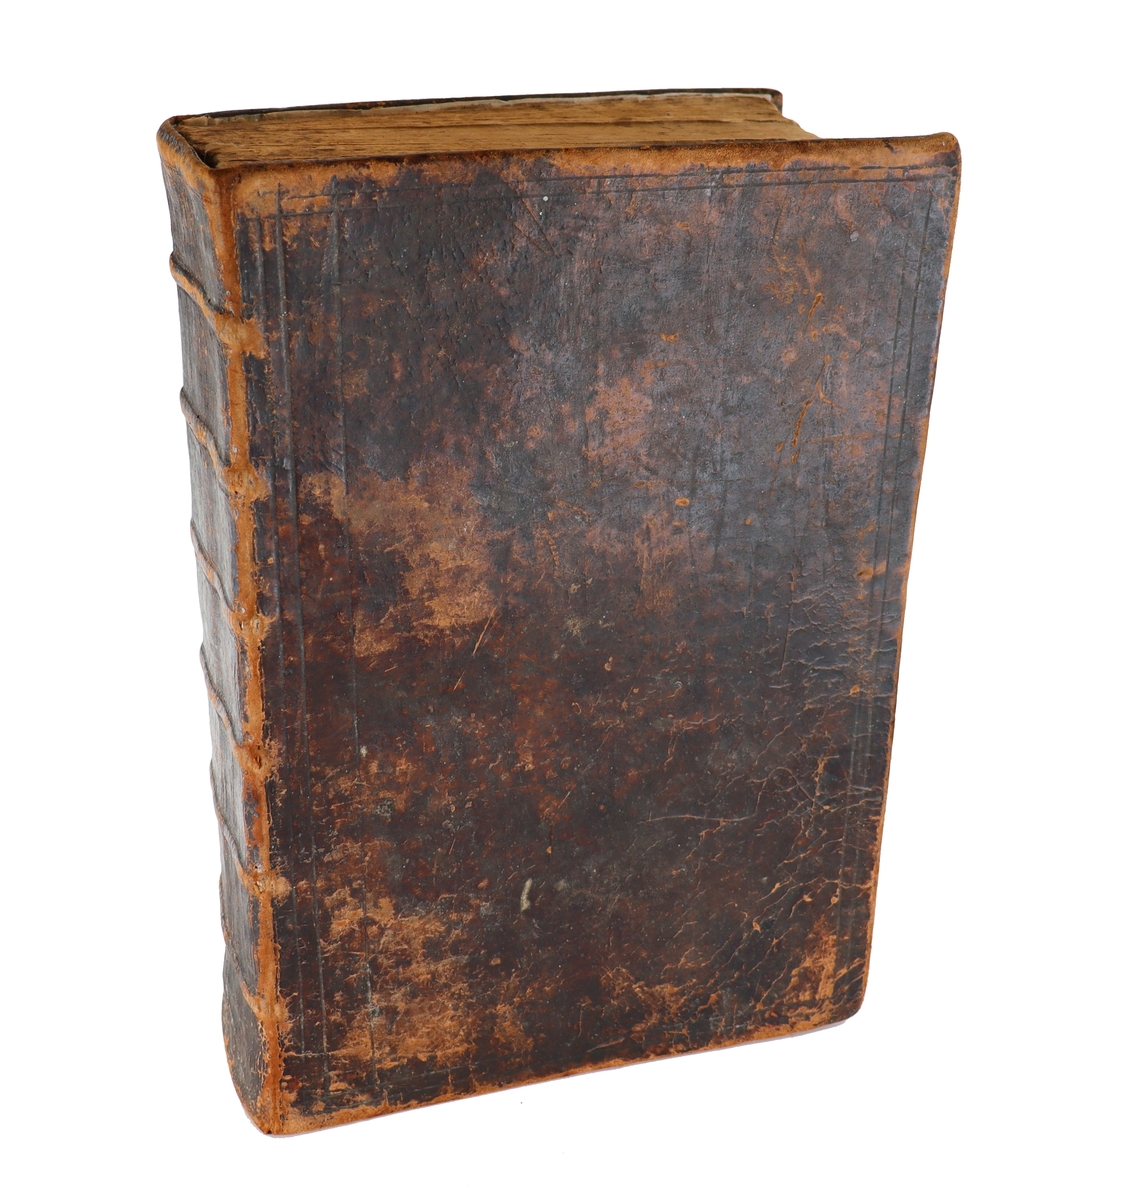 Ockelbo hembygdsförening, bibel från 1617 med anteckningar. 
Saknas kolofon, troligen Gustav II Adolfs bibel.